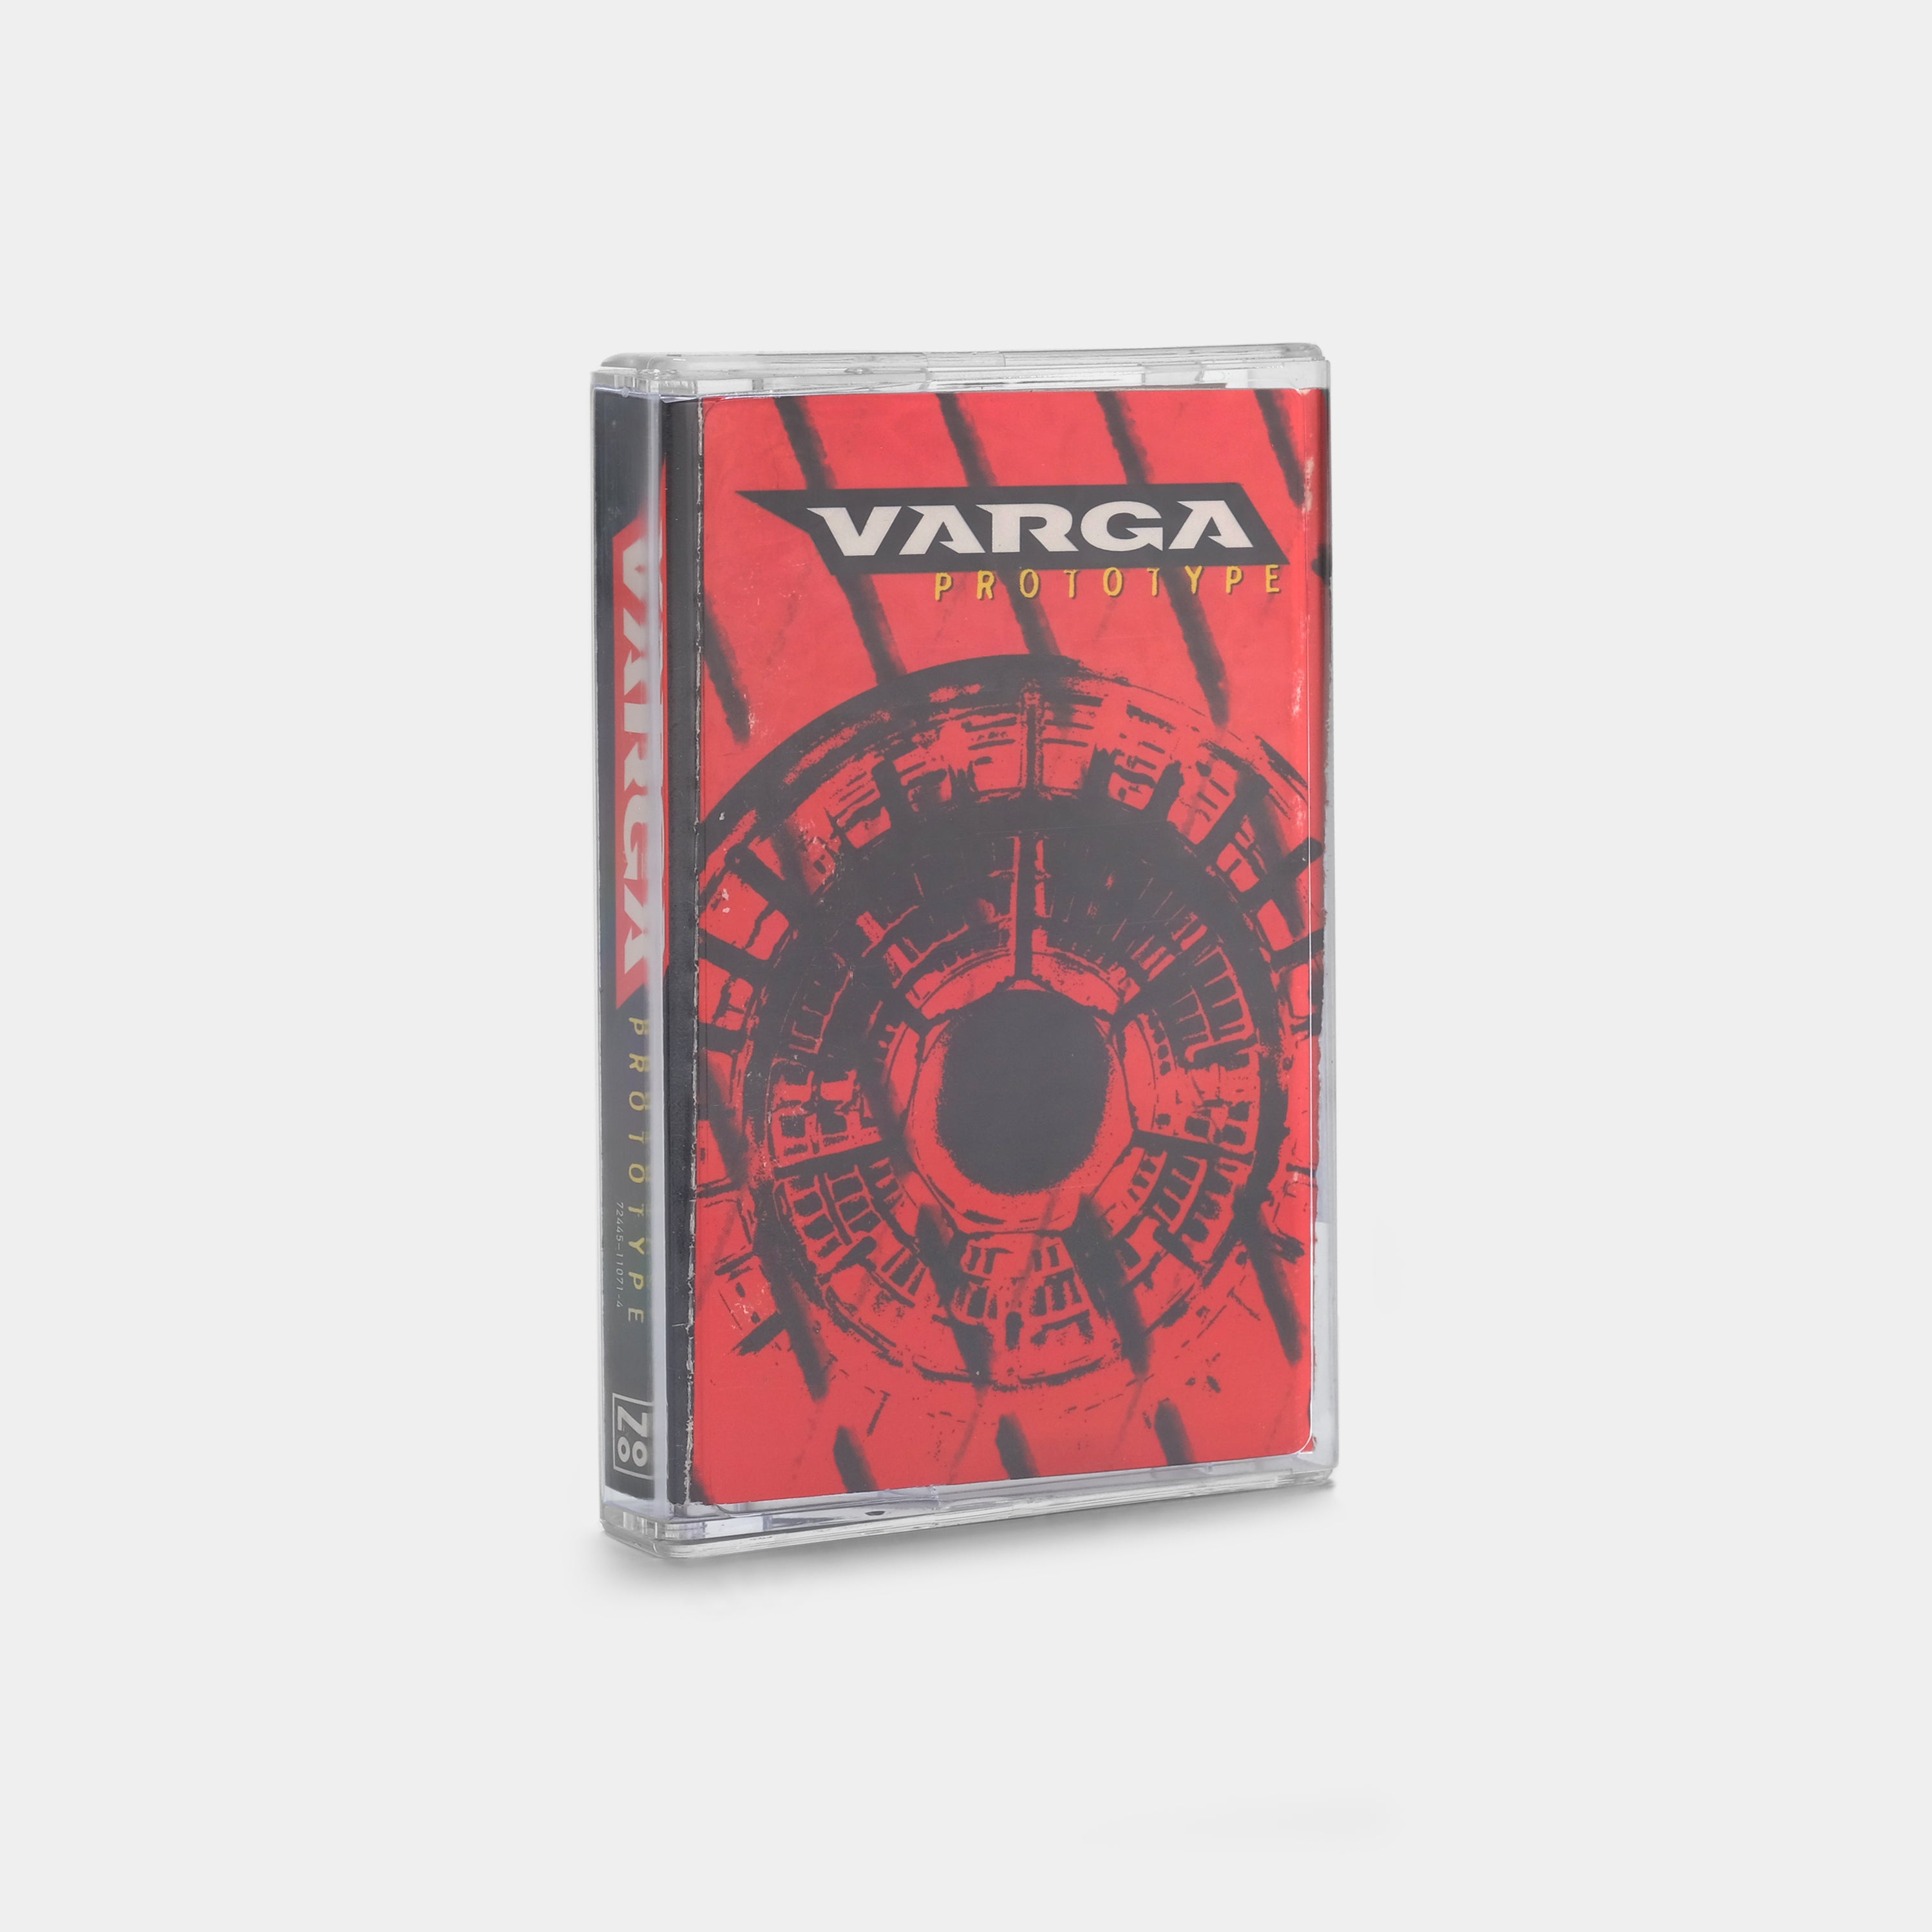 Varga - Prototype Cassette Tape